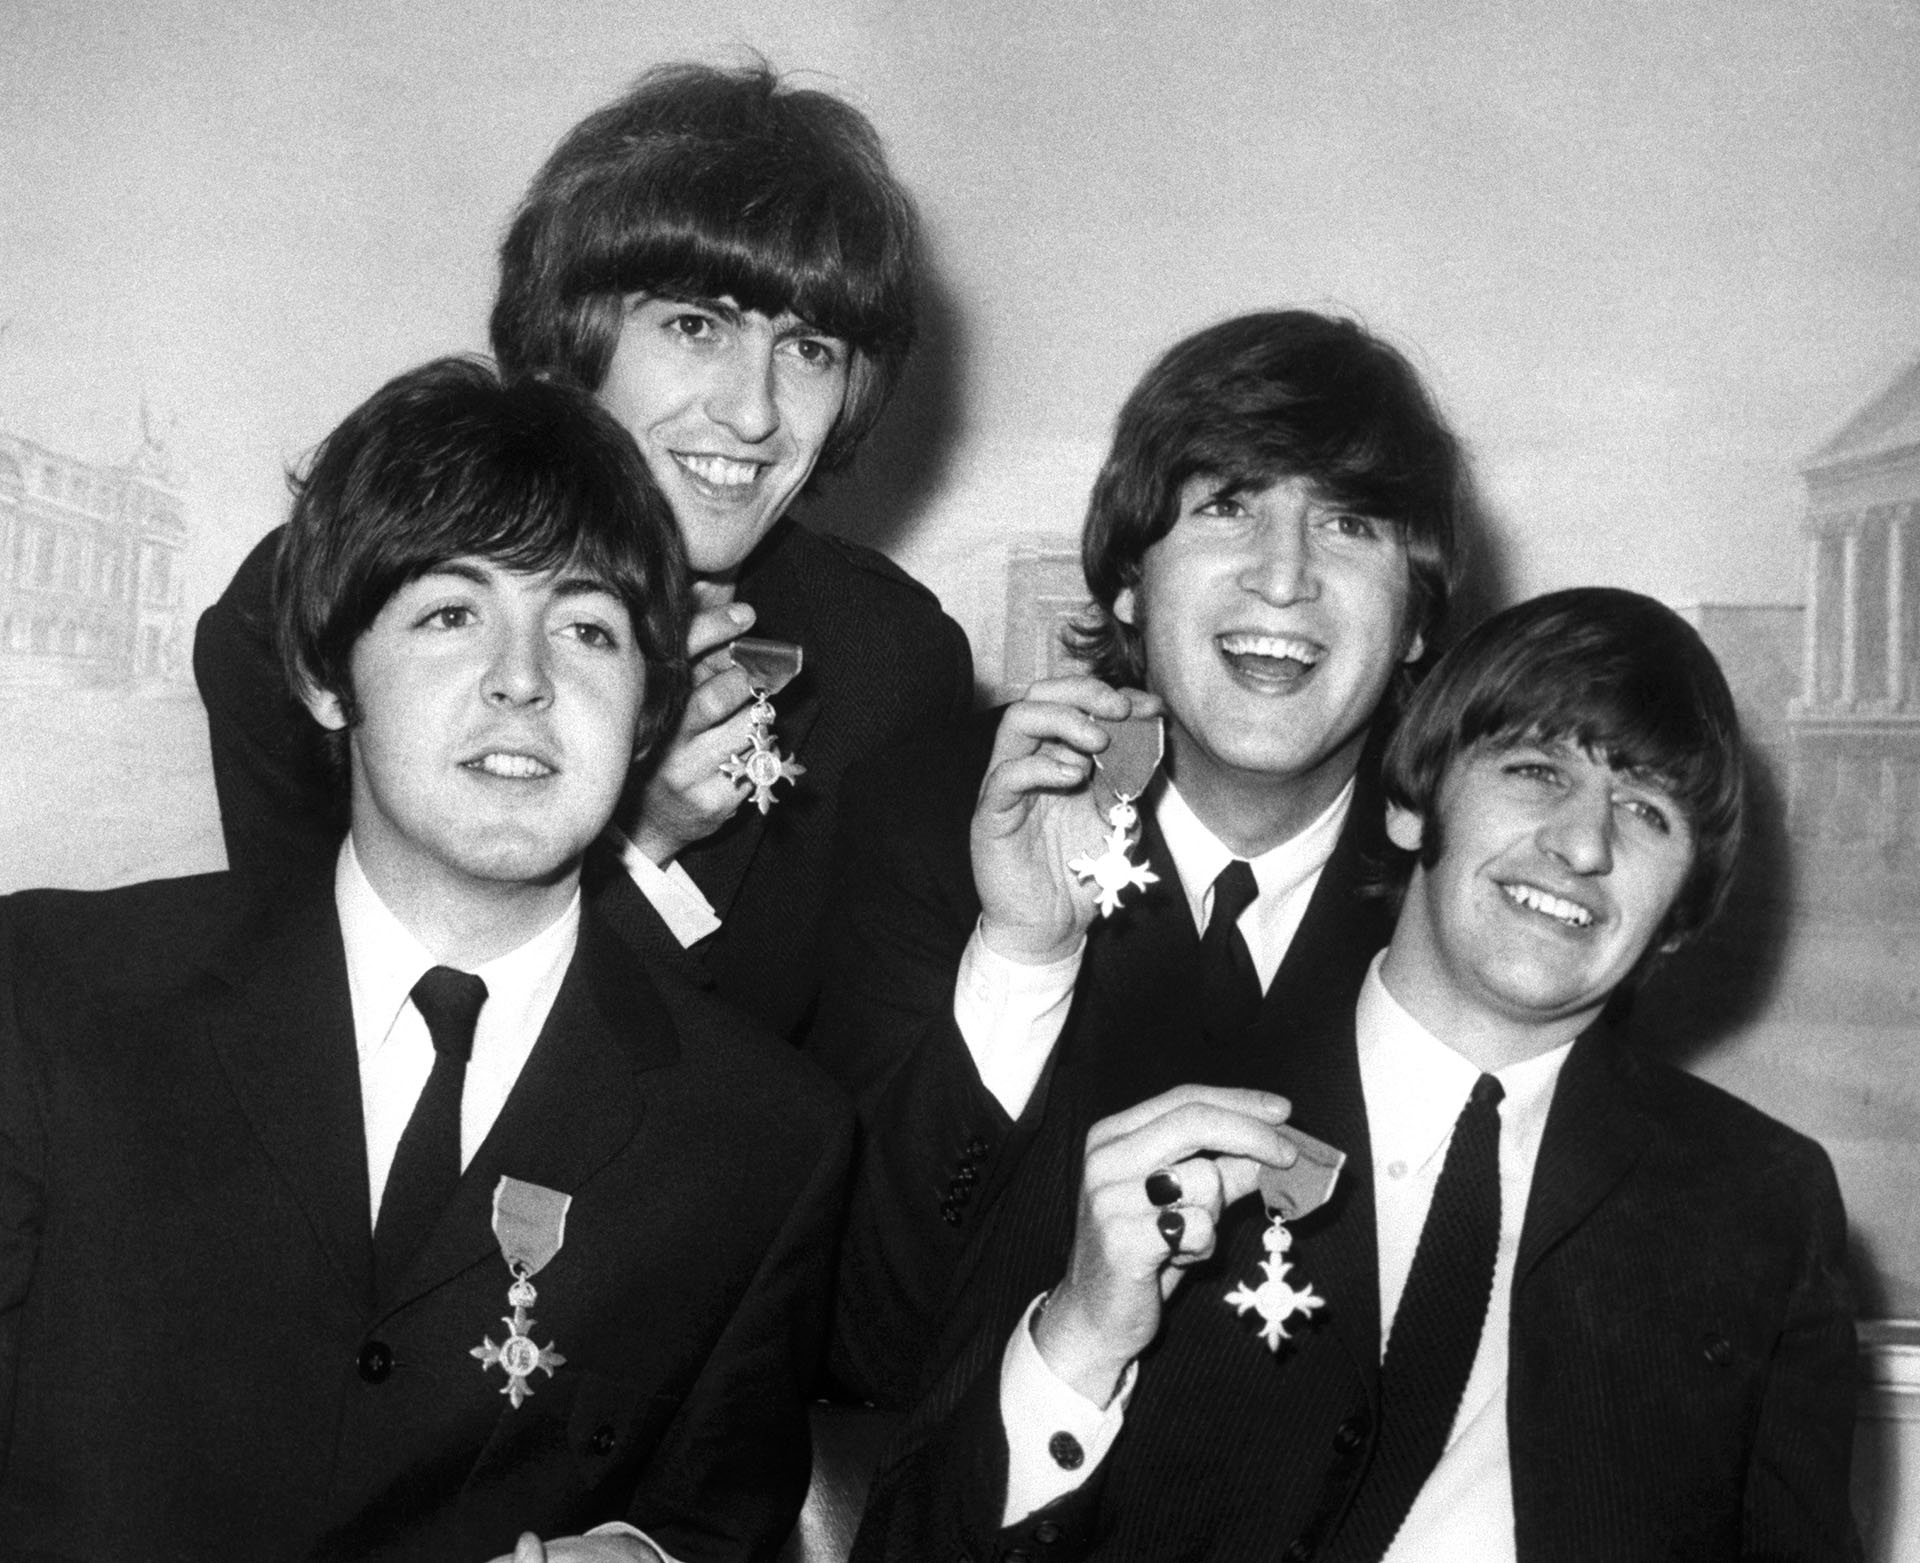 El 1 de enero de 1962, se presentaron ante el señor Smith y ante el productor Dick Rowe cuatro muchachos con sus guitarras, bajo y batería, para que les tomaran una prueba en el sello Decca. Eran Los Beatles